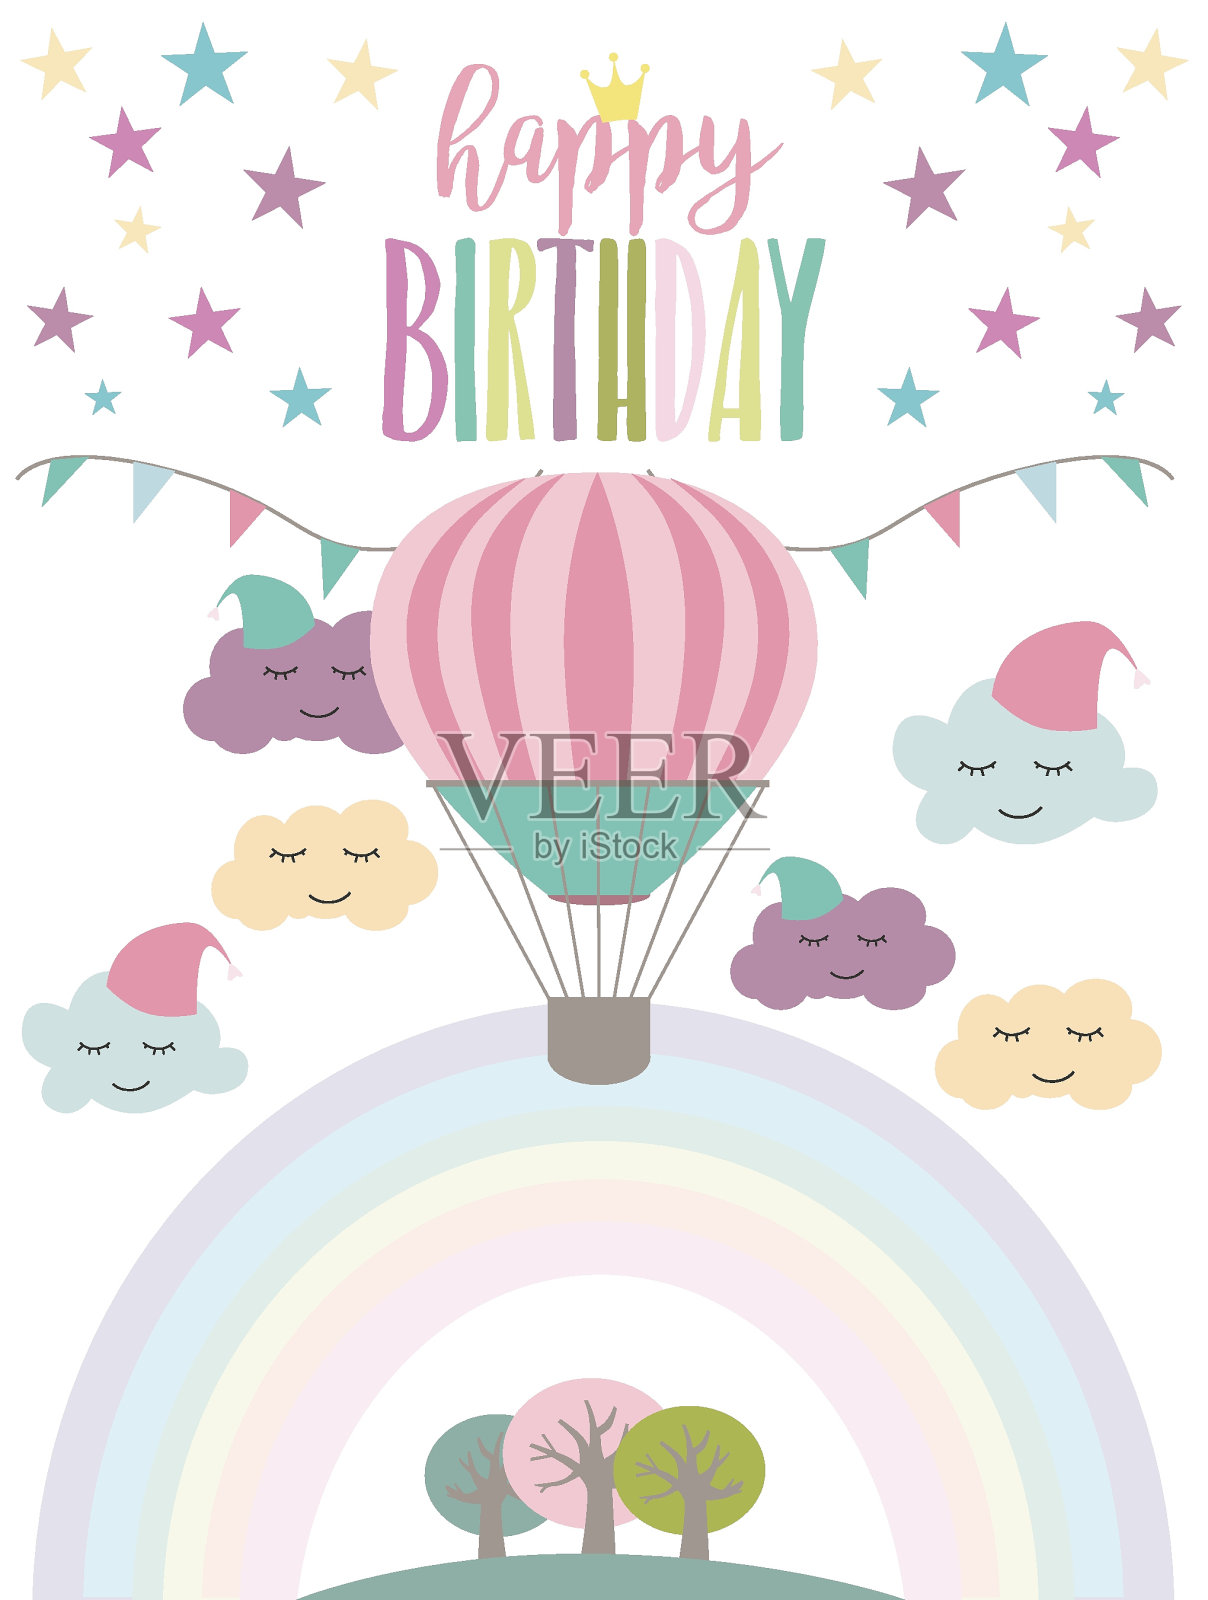 有独角兽和彩虹的魔法派对卡。生日问候或邀请海报。插画图片素材